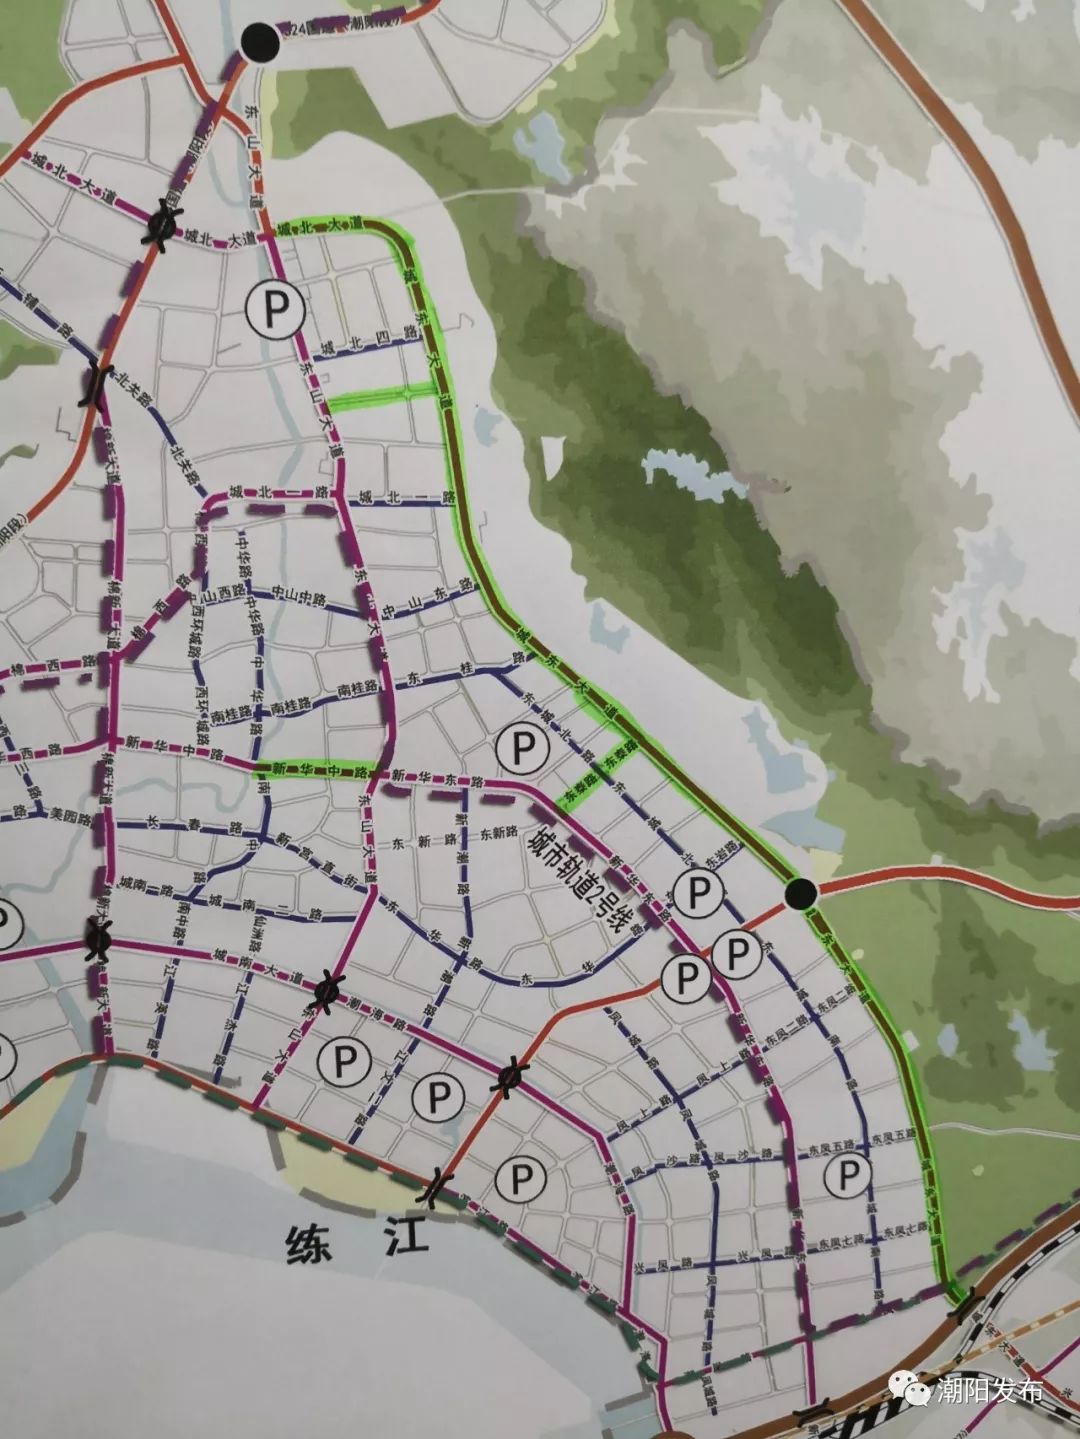 右侧一纵线的划绿线部分为环市东路改善投资环境,增进城区扩容提质